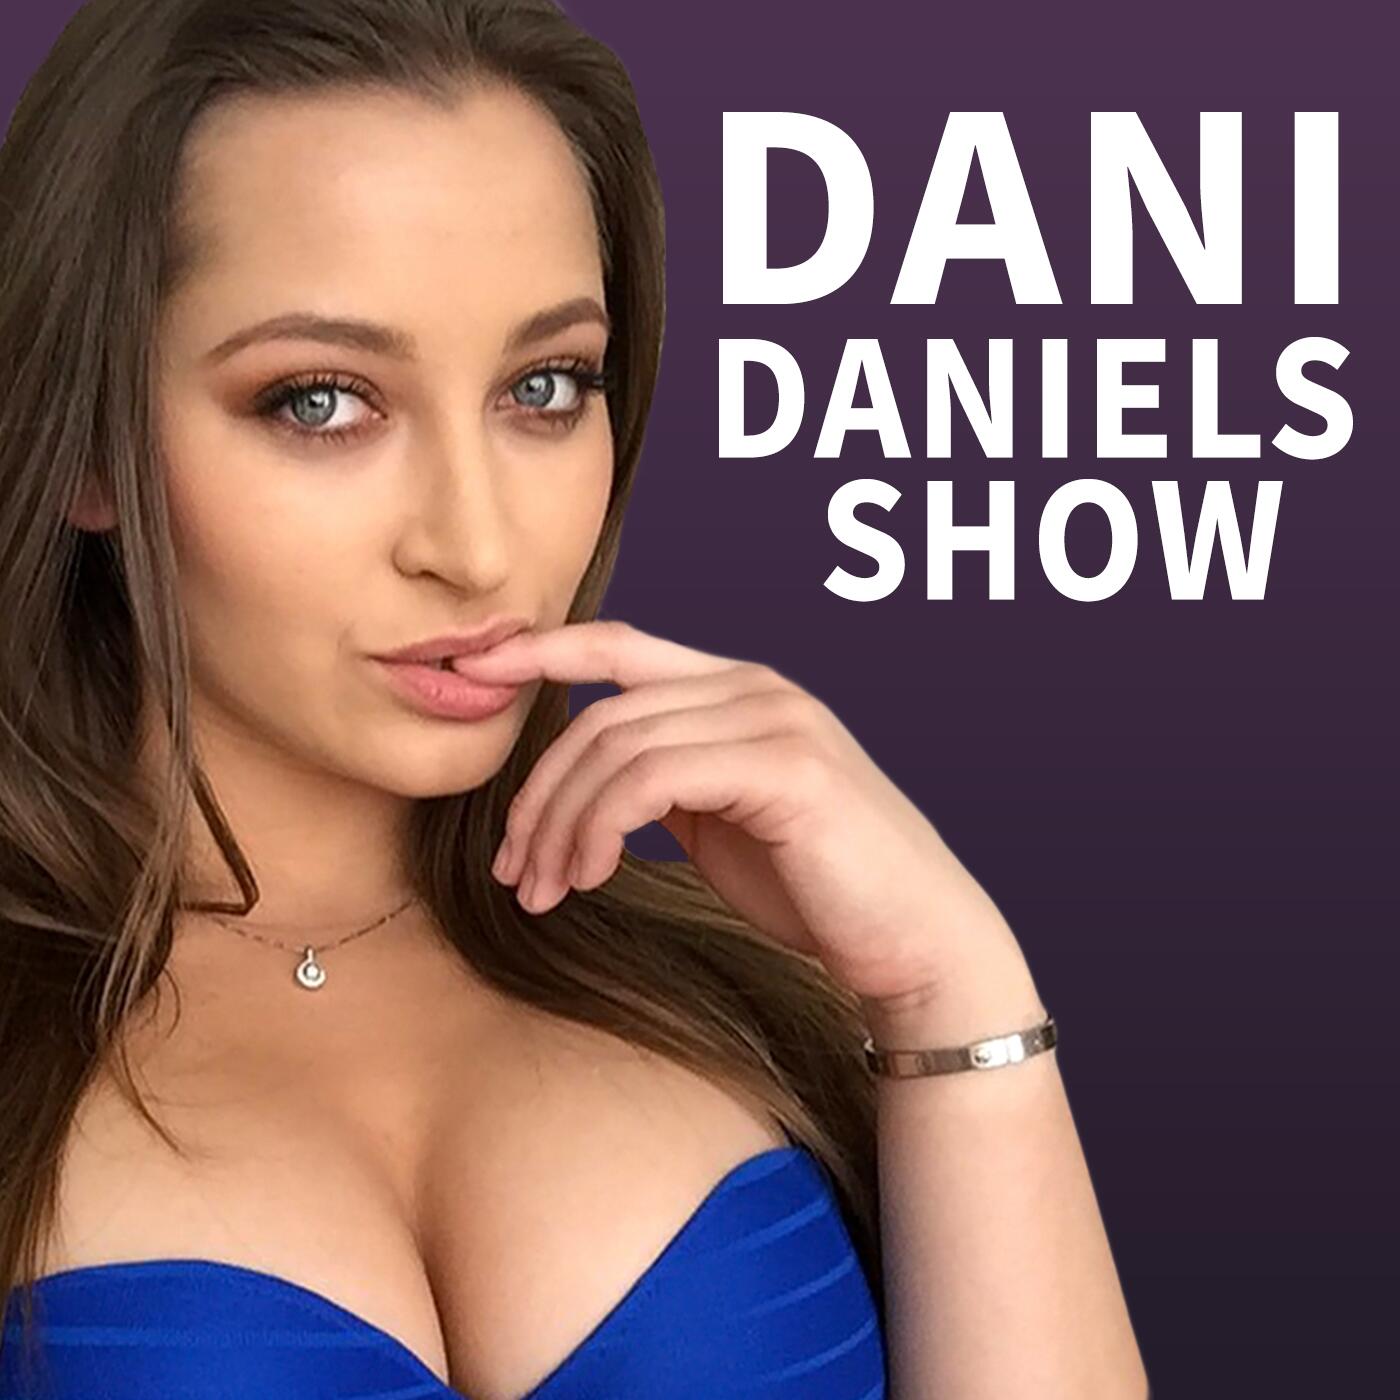 Dani daniels schedule